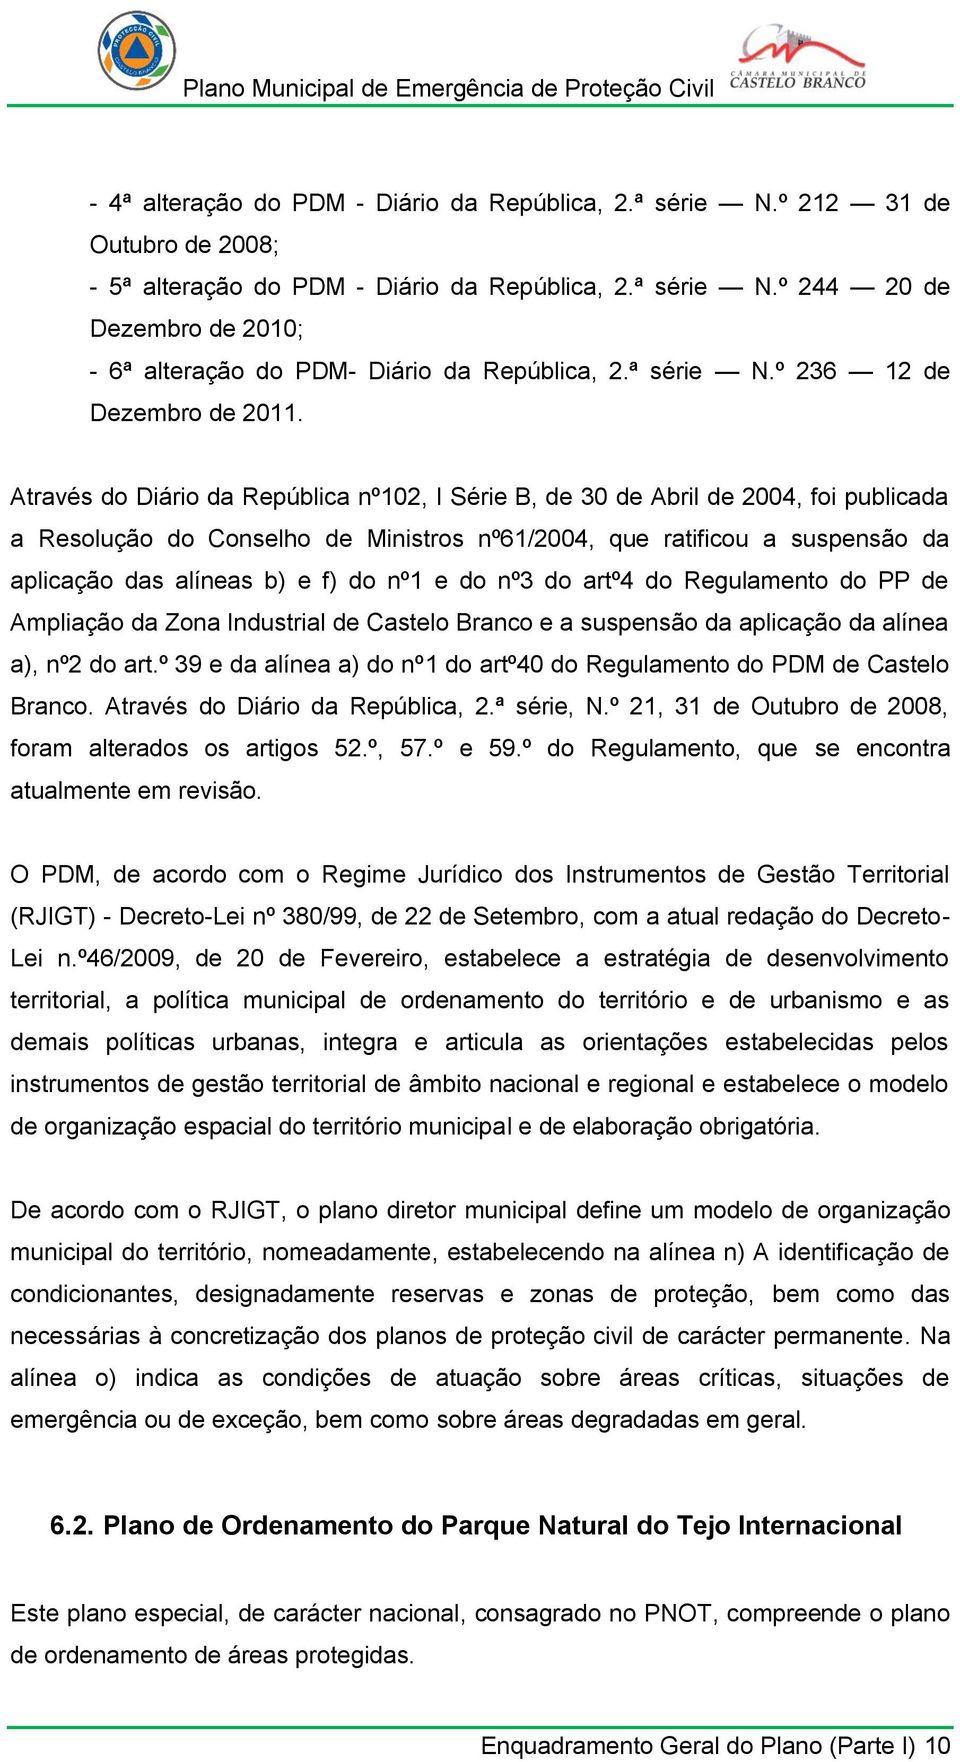 Através do Diário da República nº102, I Série B, de 30 de Abril de 2004, foi publicada a Resolução do Conselho de Ministros nº61/2004, que ratificou a suspensão da aplicação das alíneas b) e f) do